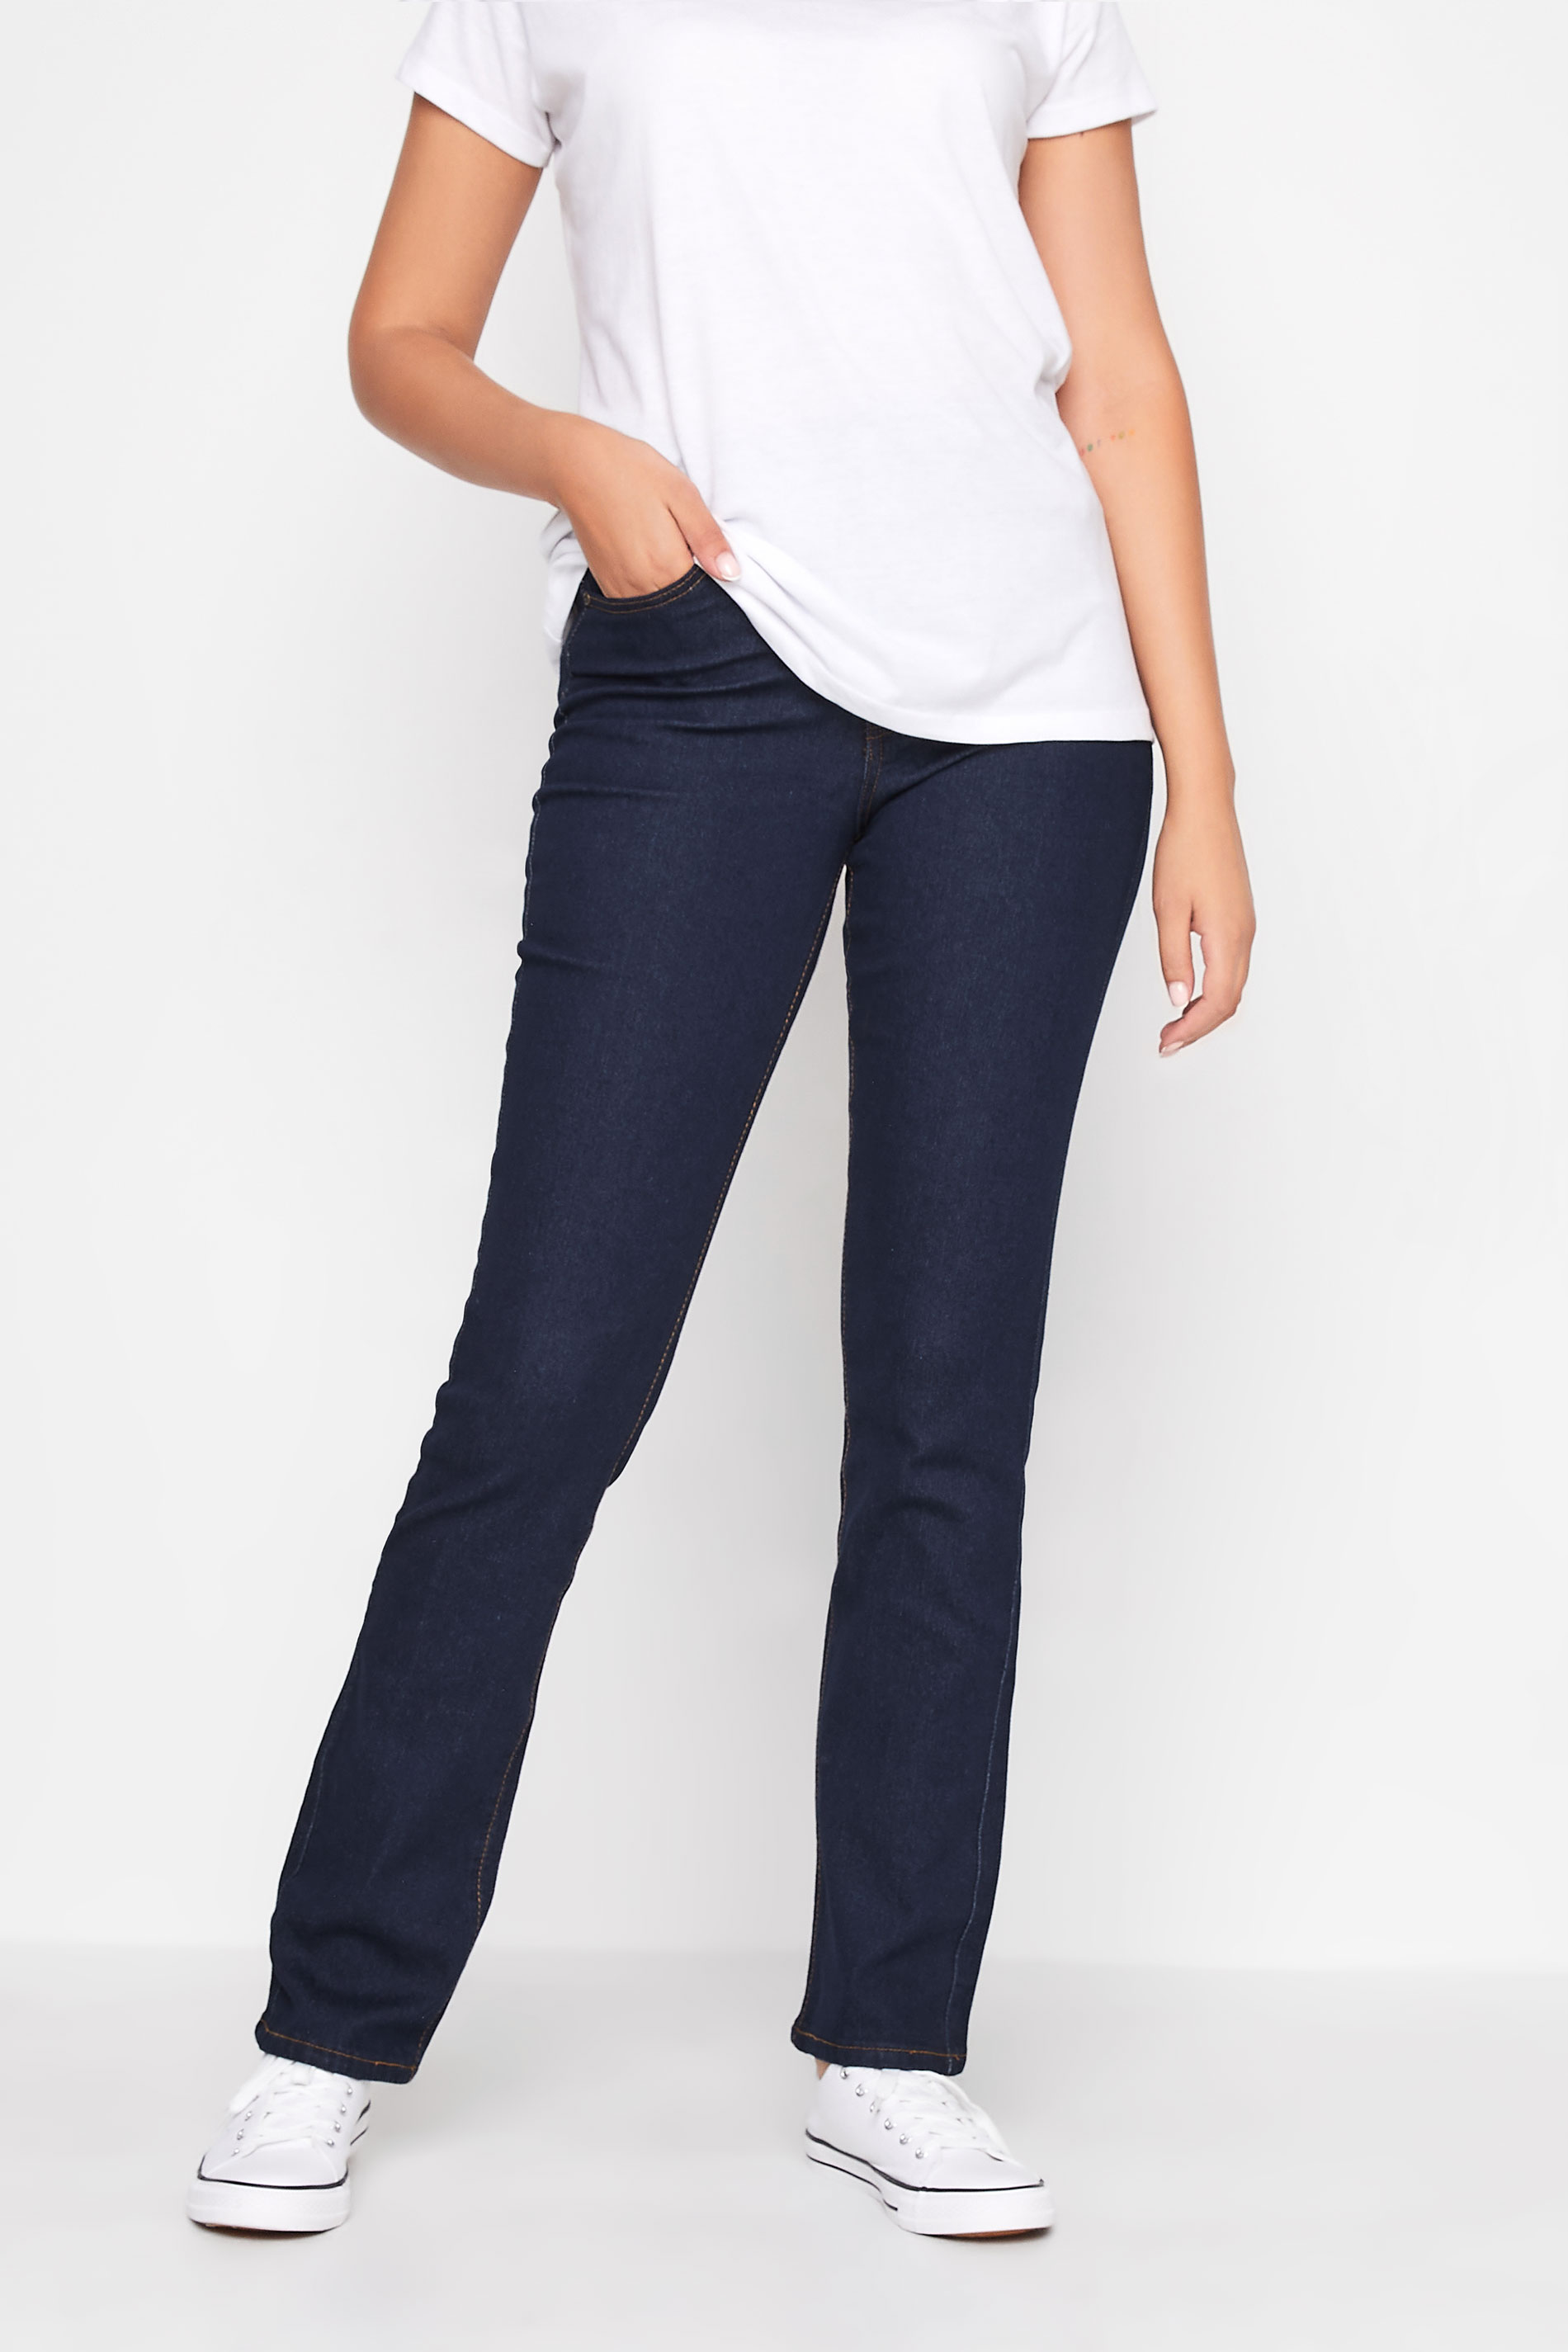 LTS Tall Women's Blue Straight Leg Jeans | Long Tall Sally  1